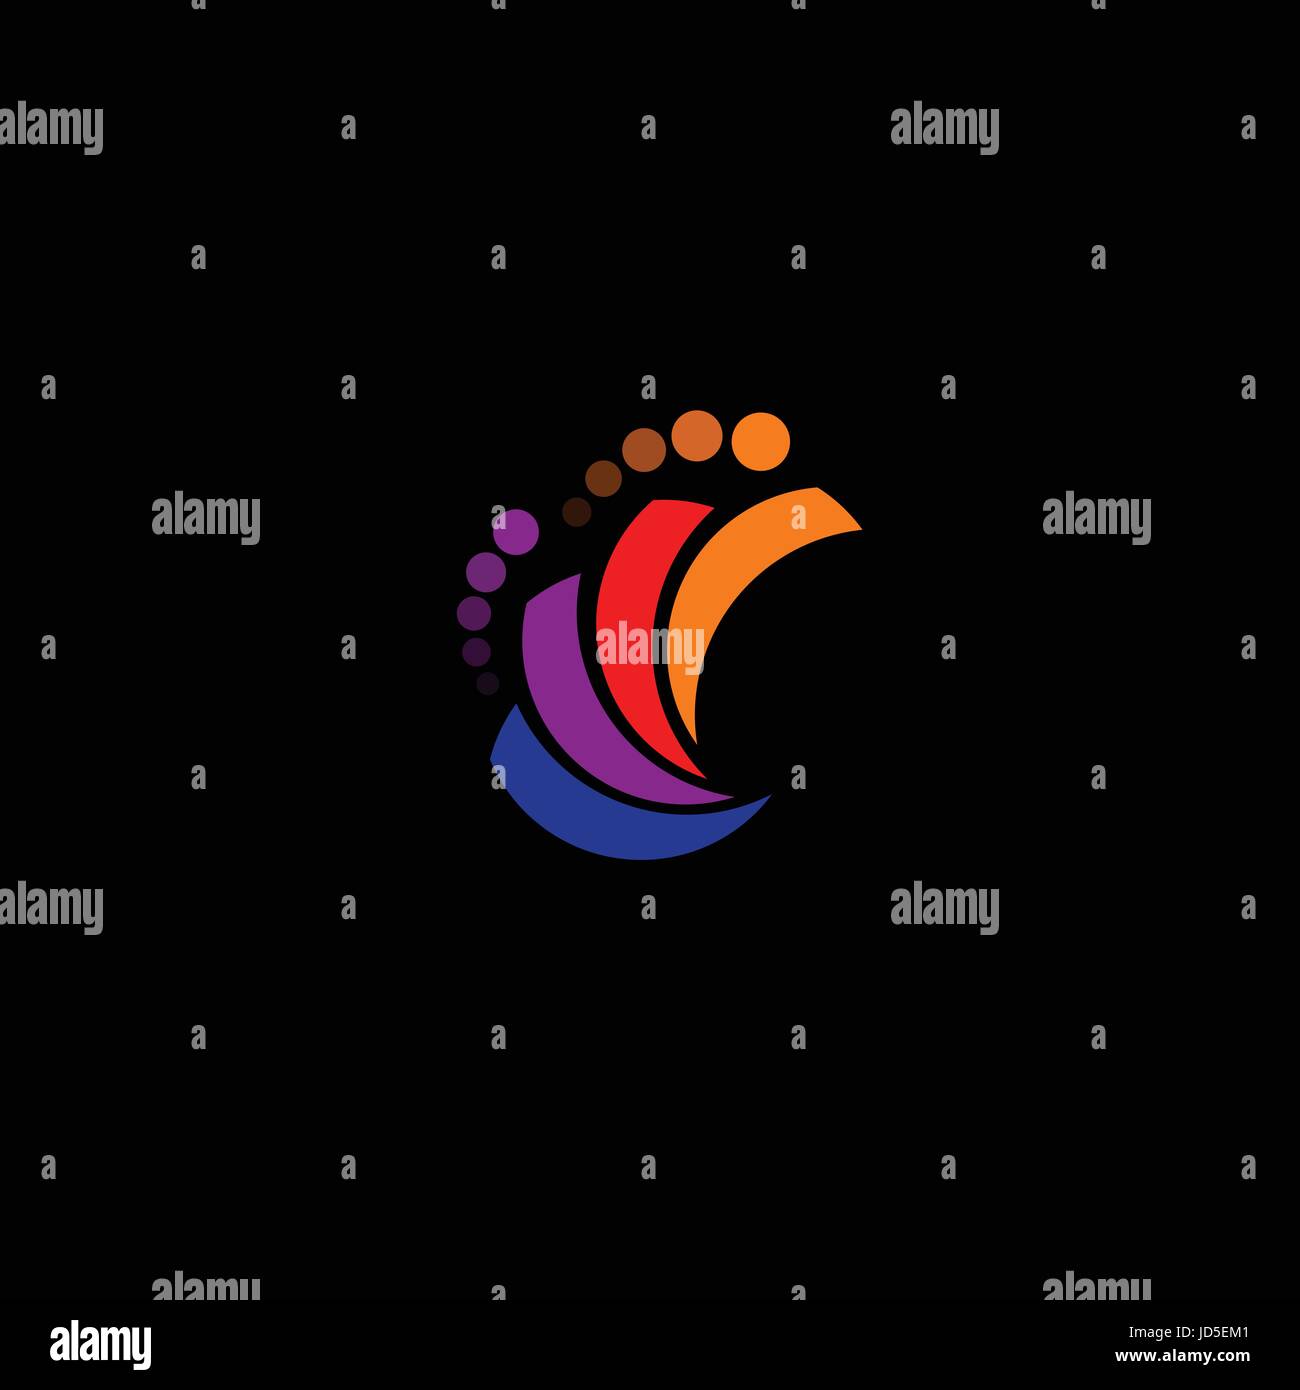 Regenbogen-Logo mit Kreisen Kreise Vektor Promo Firmenzeichen zu abstrahieren. Ein Mann mit Stil in Bewegung helles Ereignis punktiert Logo auf schwarzem Hintergrund Stock Vektor